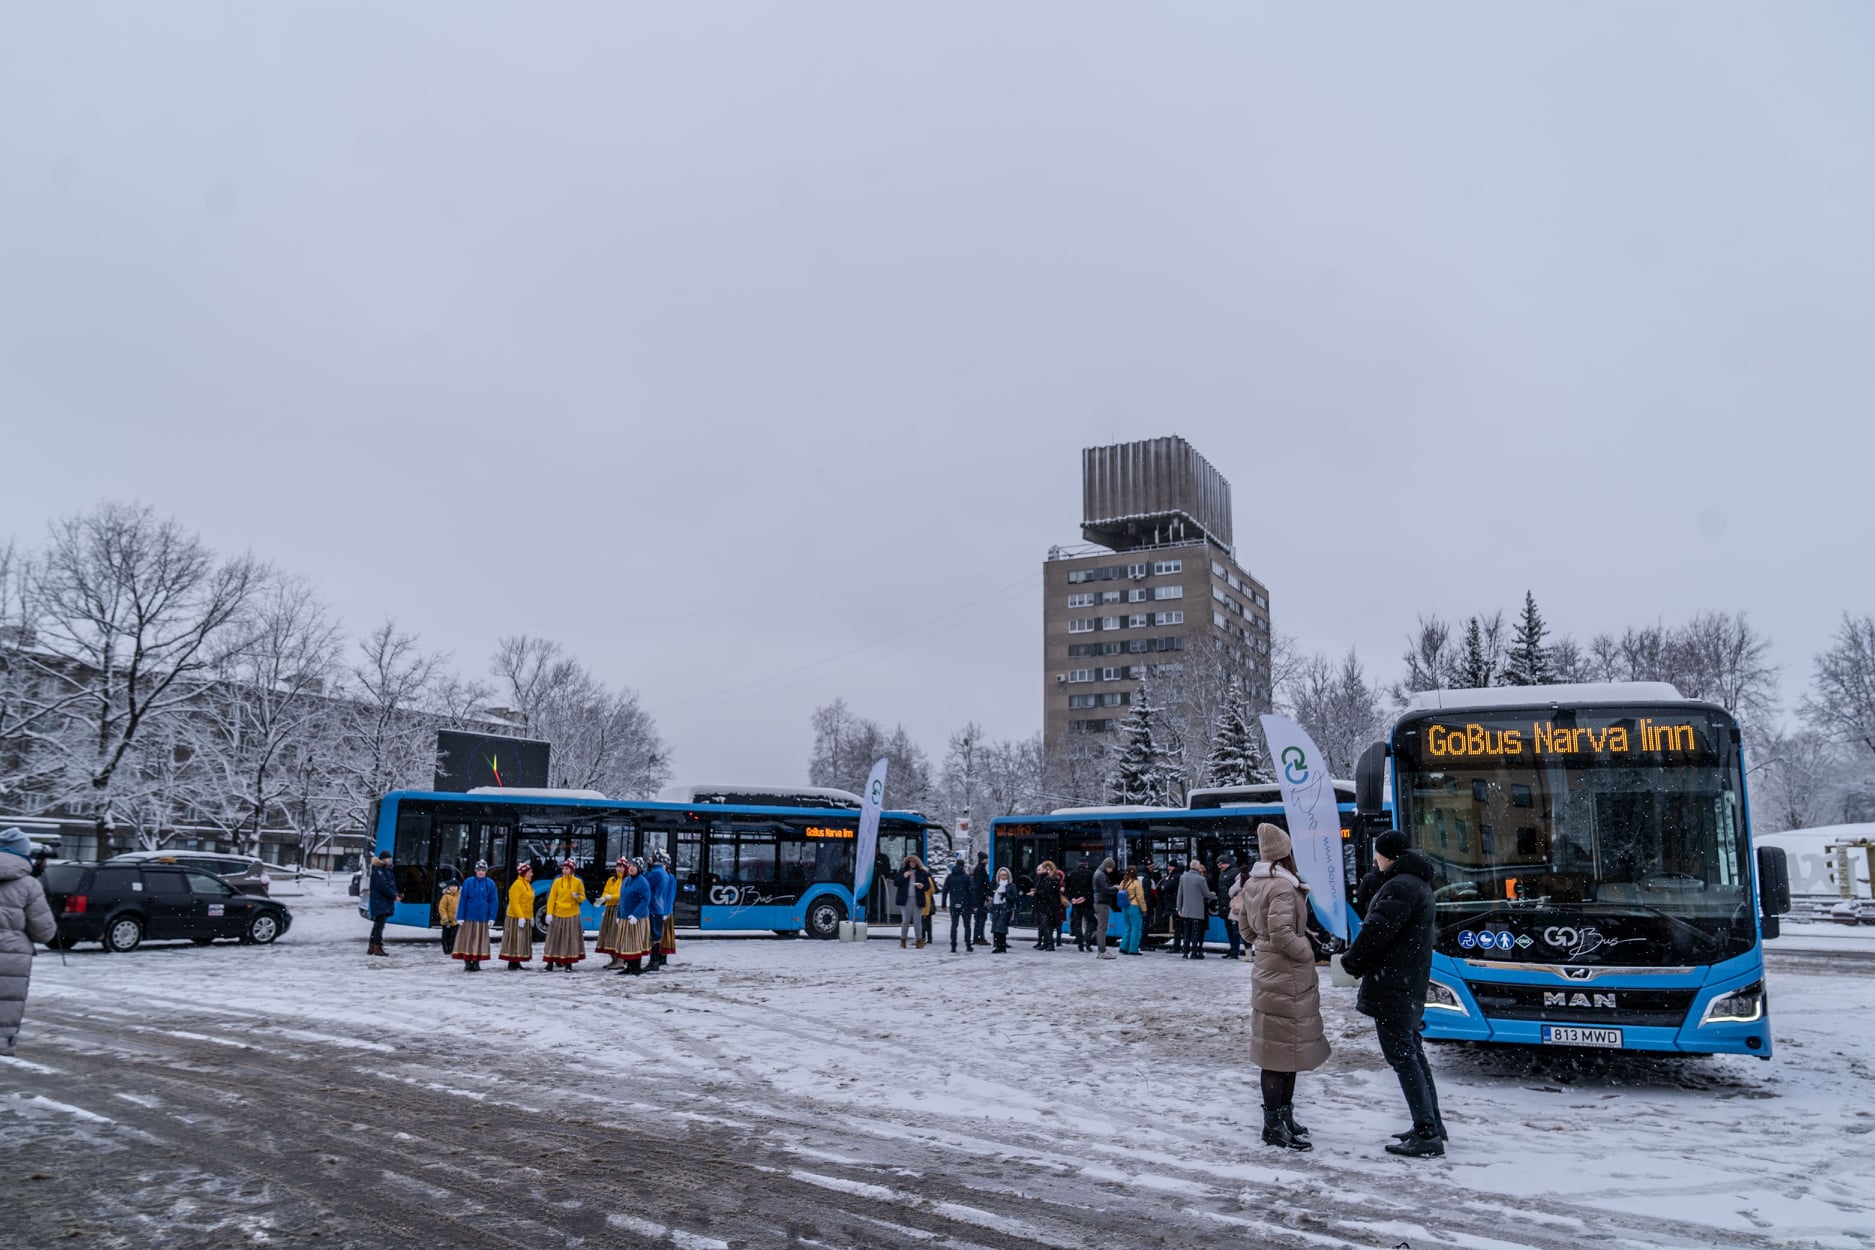 Public transport in Narva | Visit Narva